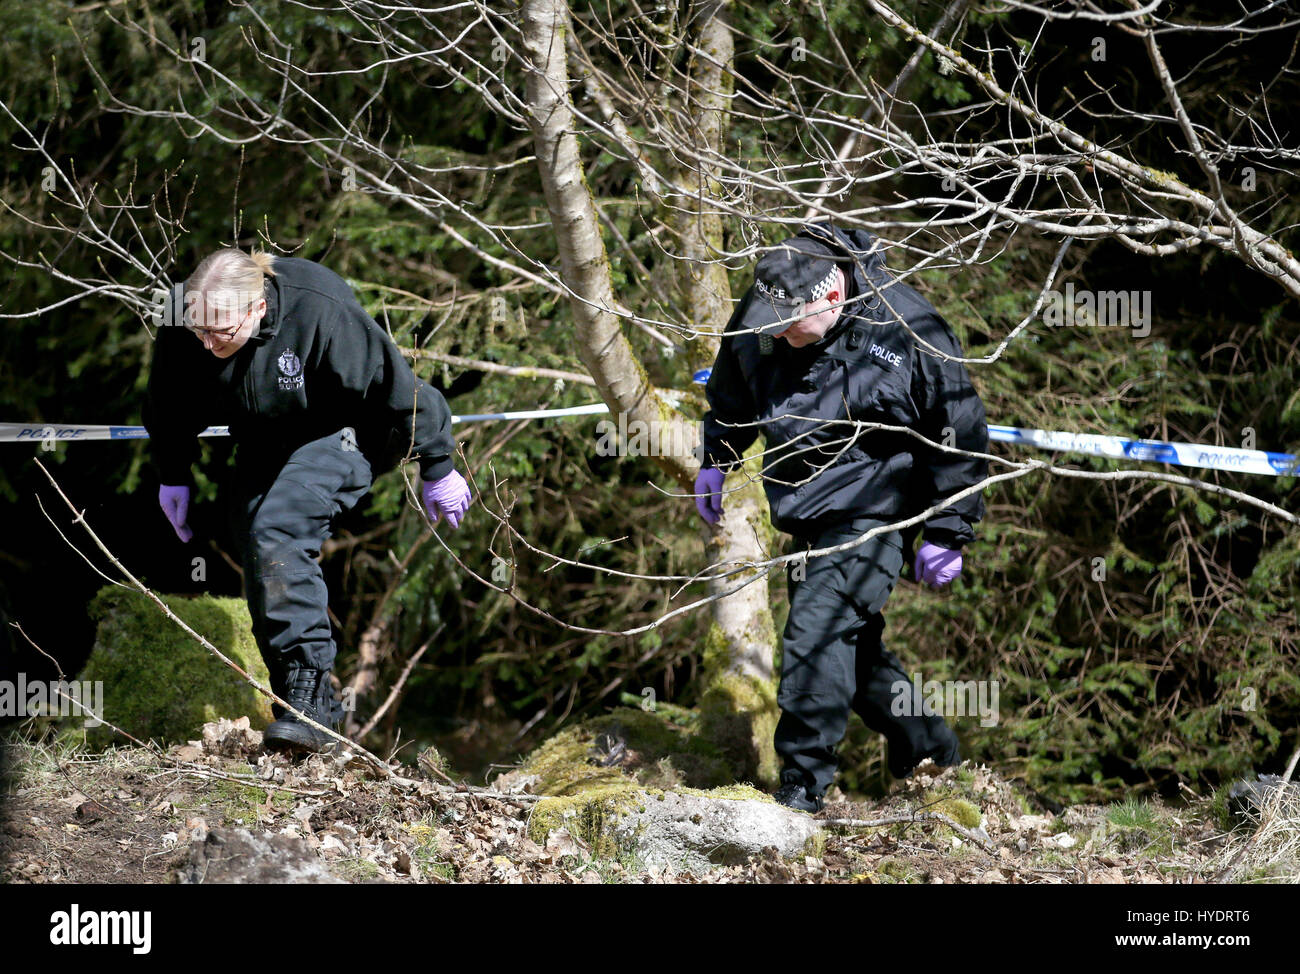 La polizia cerca bosco in prossimità di Roberton in South Lanarkshire dopo che la polizia scozzese ha lanciato un appello per le nuove informazioni in relazione alla scomparsa di Emma Caldwell che è stato trovato morto nei boschi vicino a Biggar, South Lanarkshire, nel maggio 2005. Foto Stock